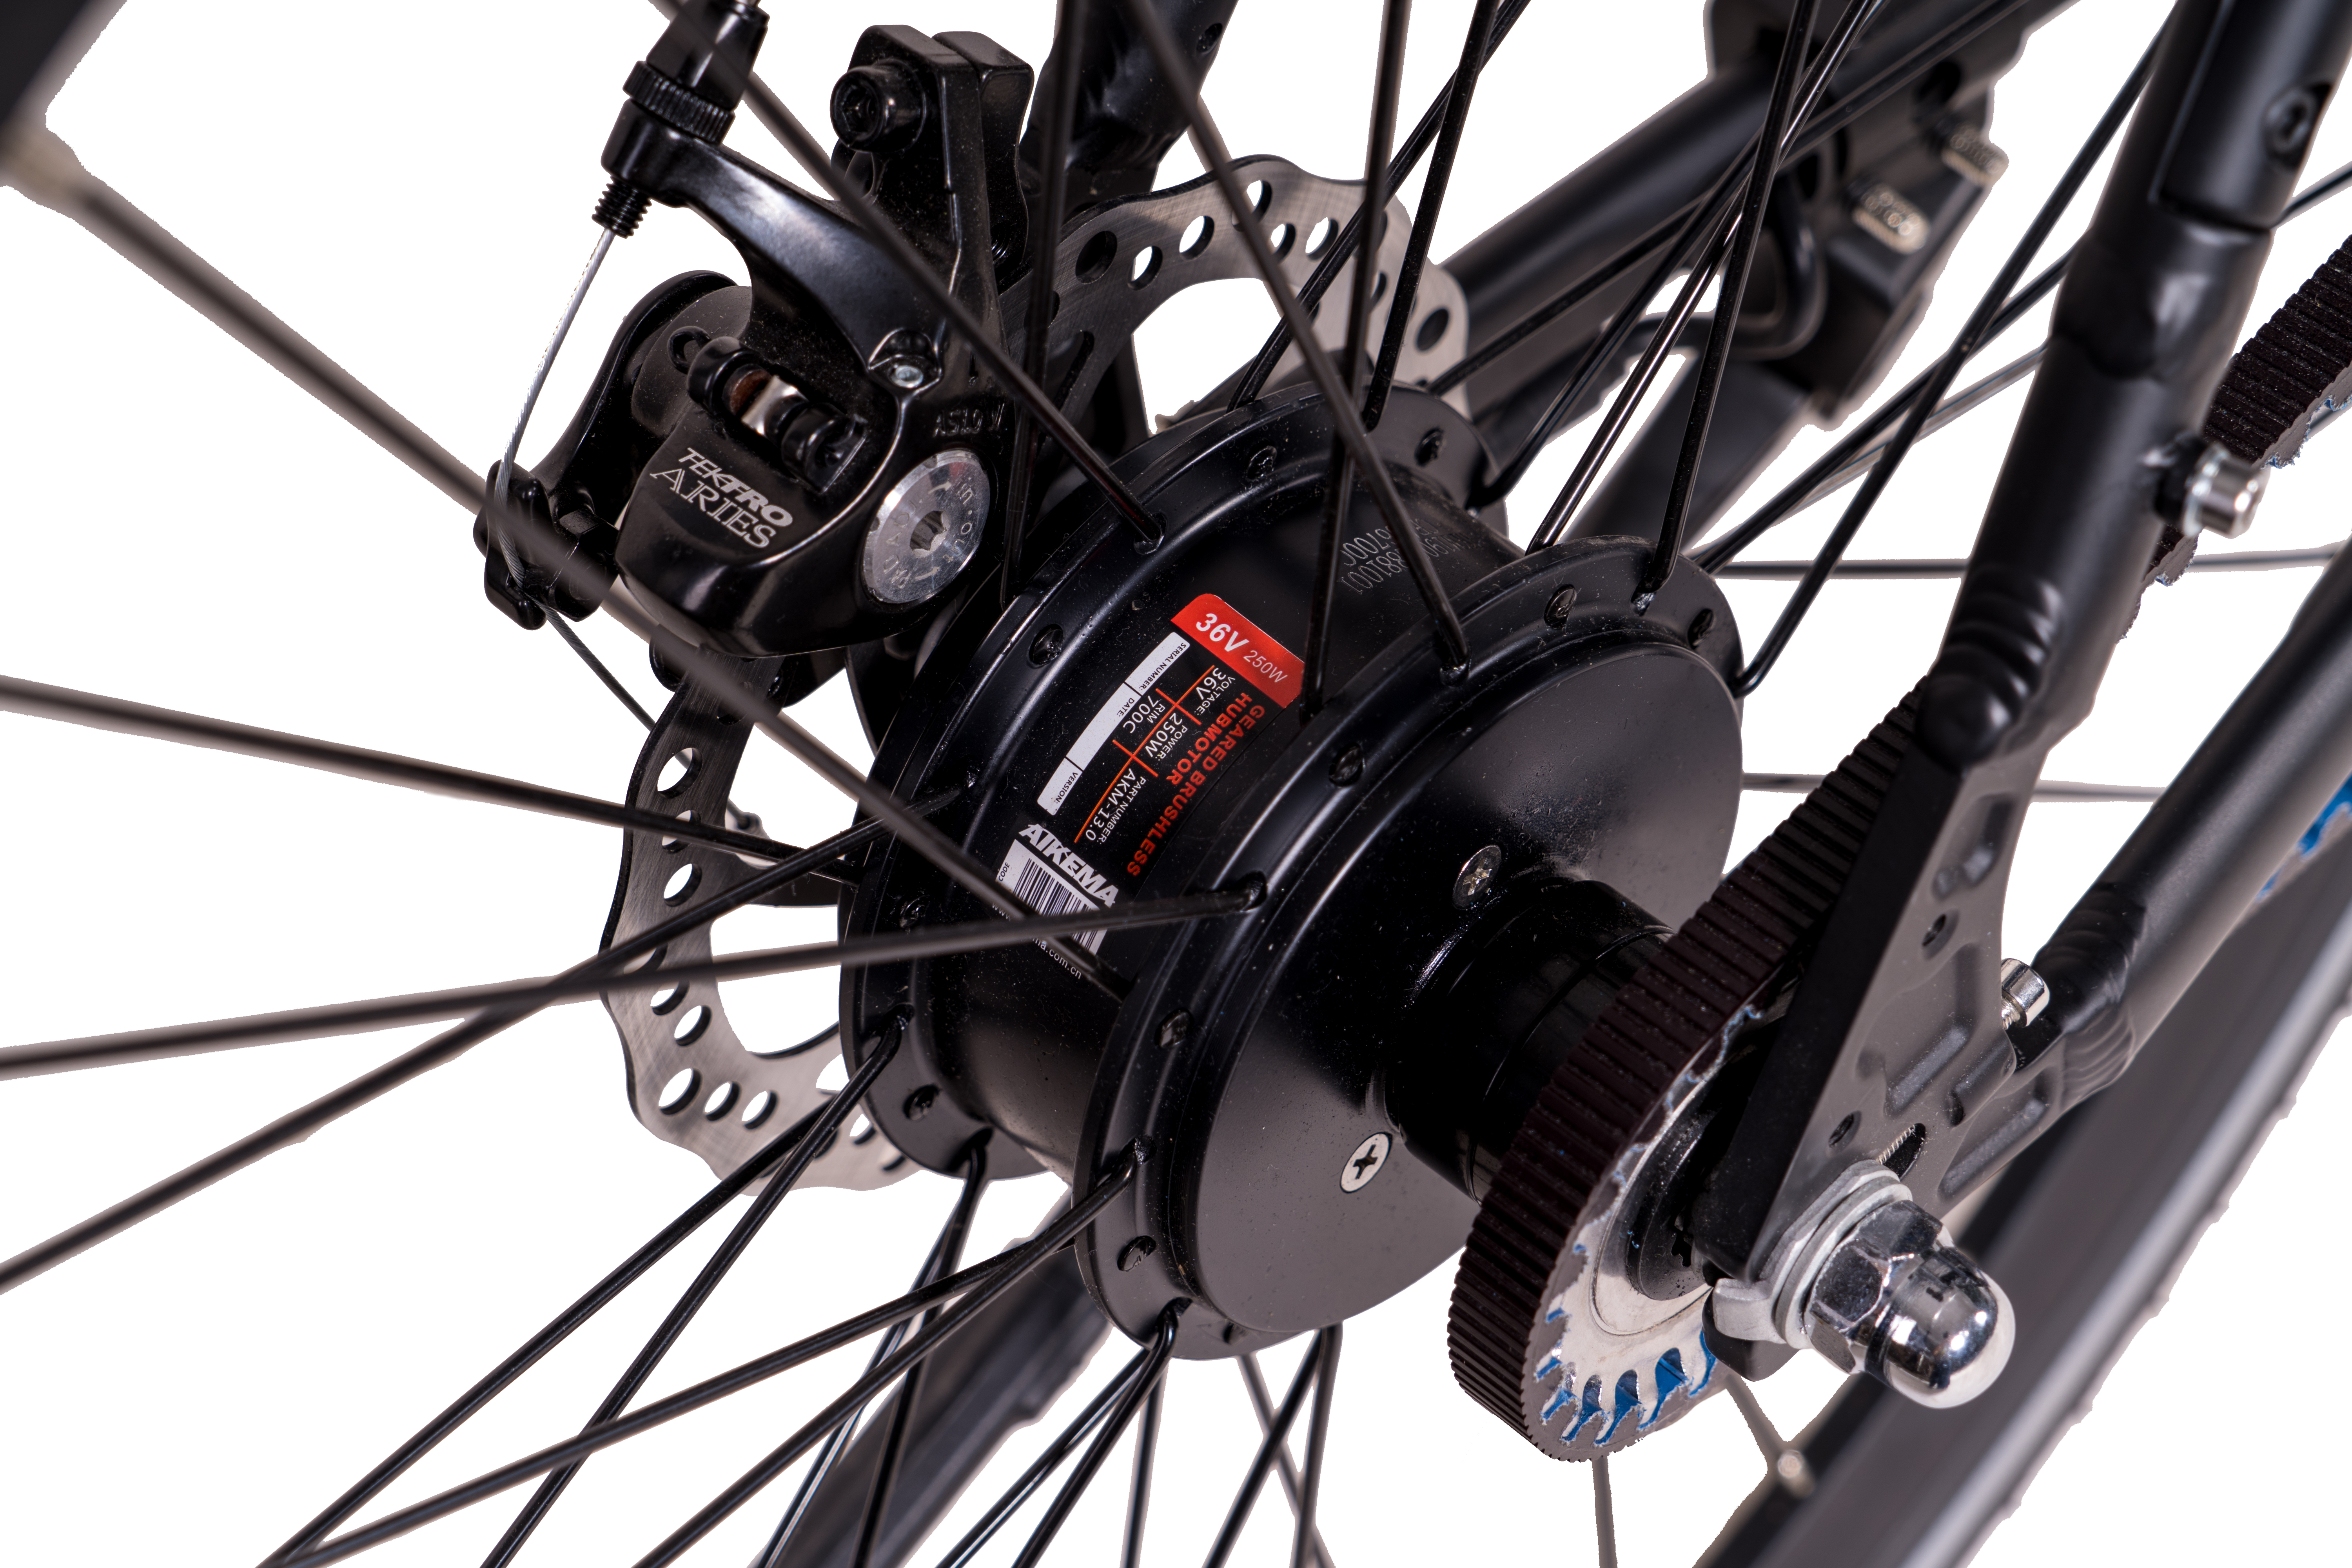 CHRISSON eOctant Riemenantrieb Urbanbike (Laufradgröße: cm, Unisex-Rad, 28 Zoll, Rahmenhöhe: 52 367 schwarz) Wh